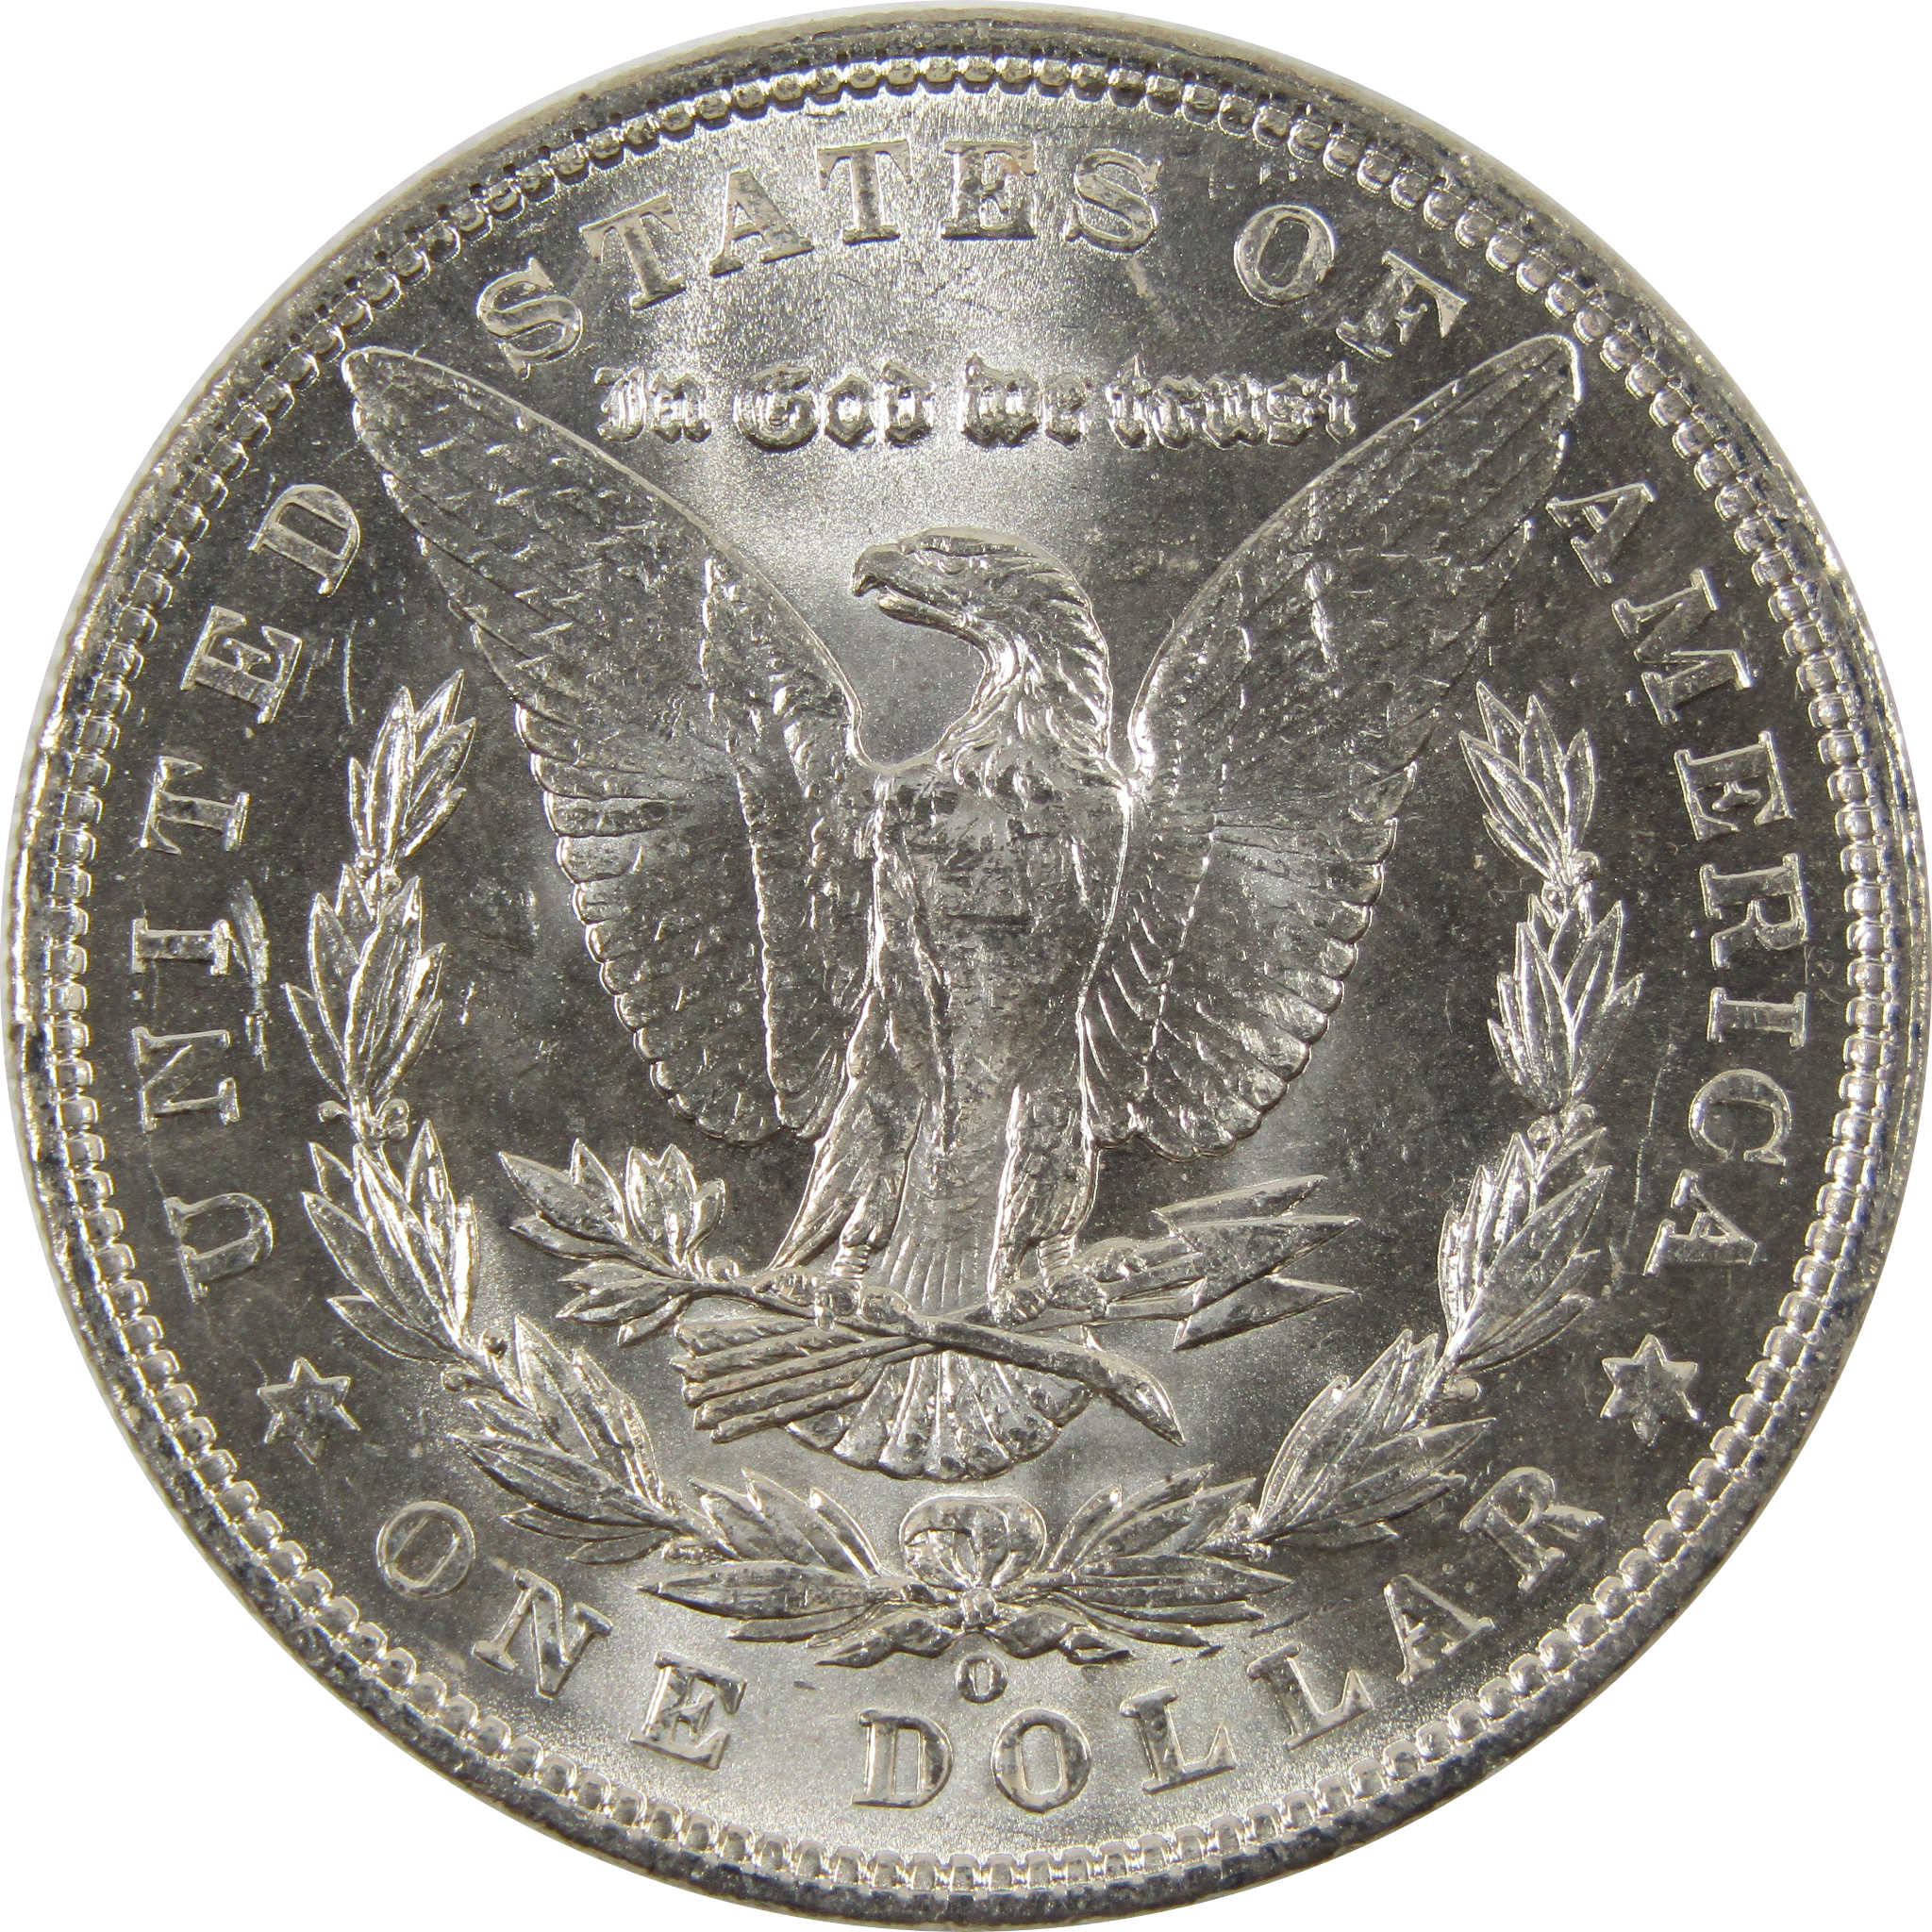 1903 O Morgan Dollar BU Choice Uncirculated 90% Silver $1 SKU:I7516 - Morgan coin - Morgan silver dollar - Morgan silver dollar for sale - Profile Coins &amp; Collectibles